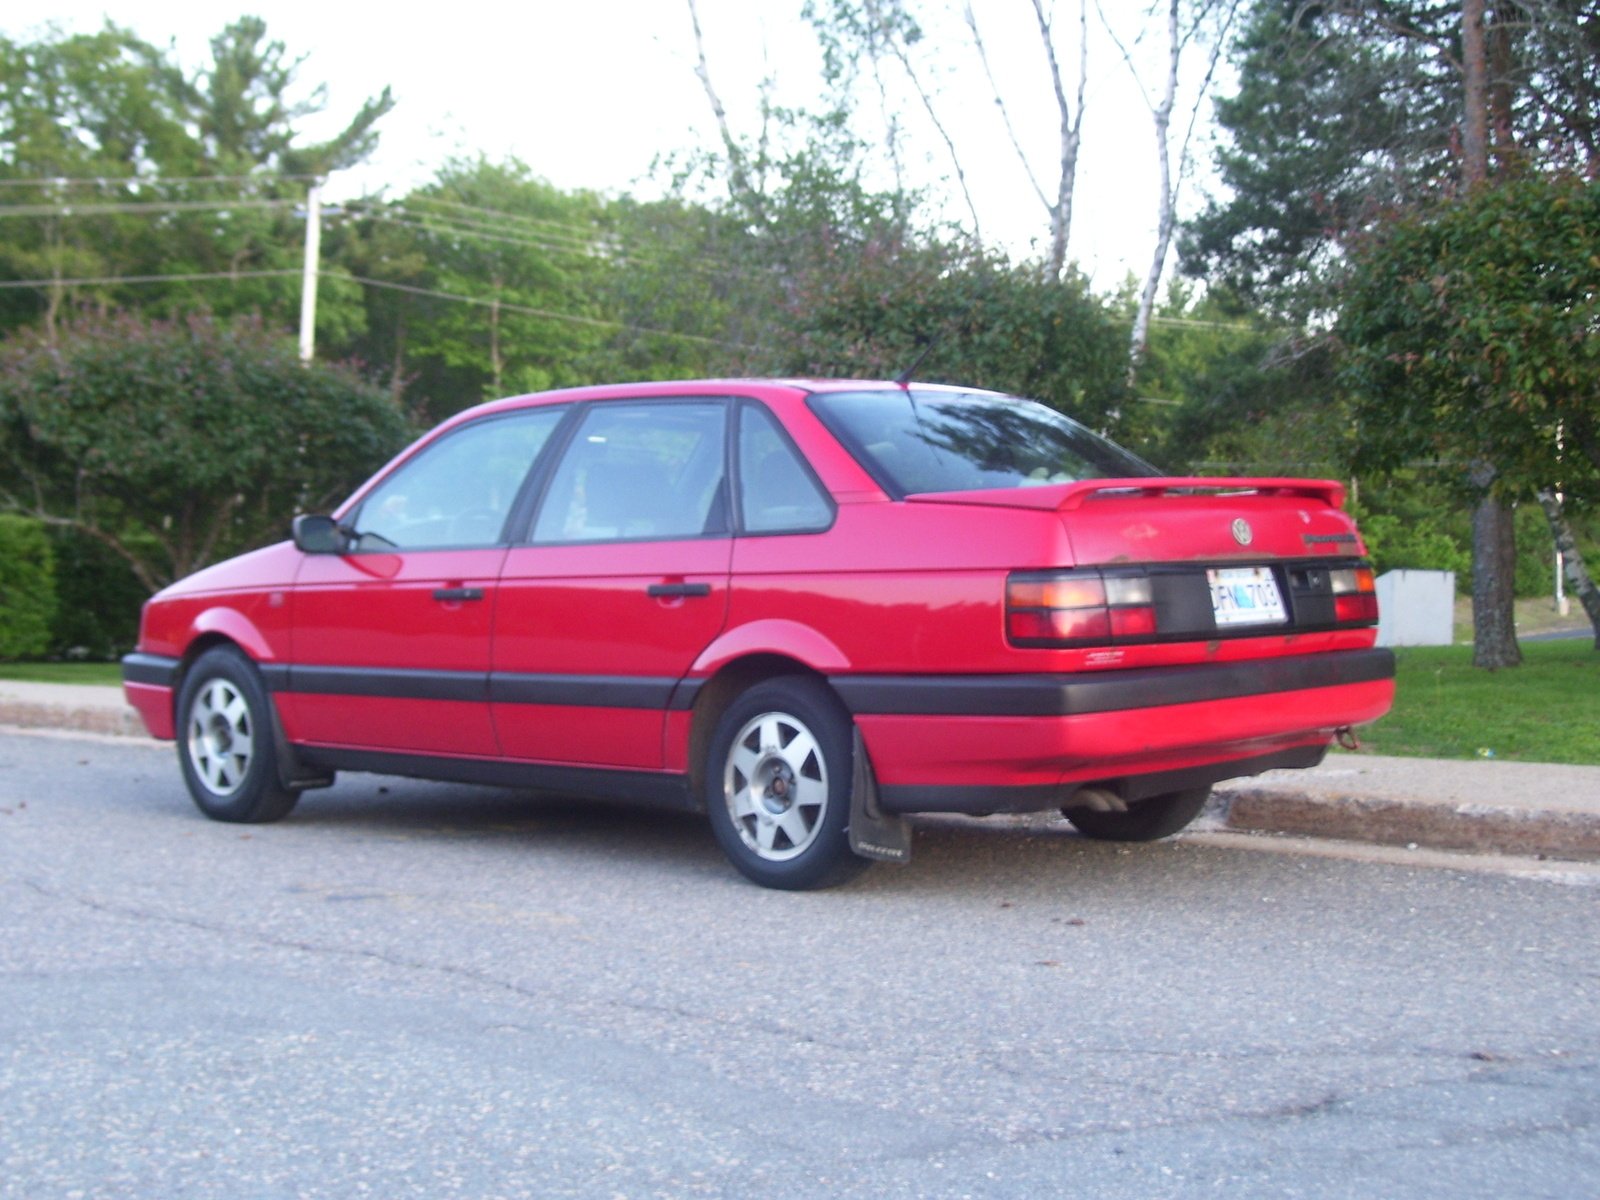 Volkswagen 1993. Volkswagen Passat b3 седан. Фольксваген Пассат 1993. Фольксваген Пассат б3 1993 года. Фольксваген Пассат 1992 года седан.